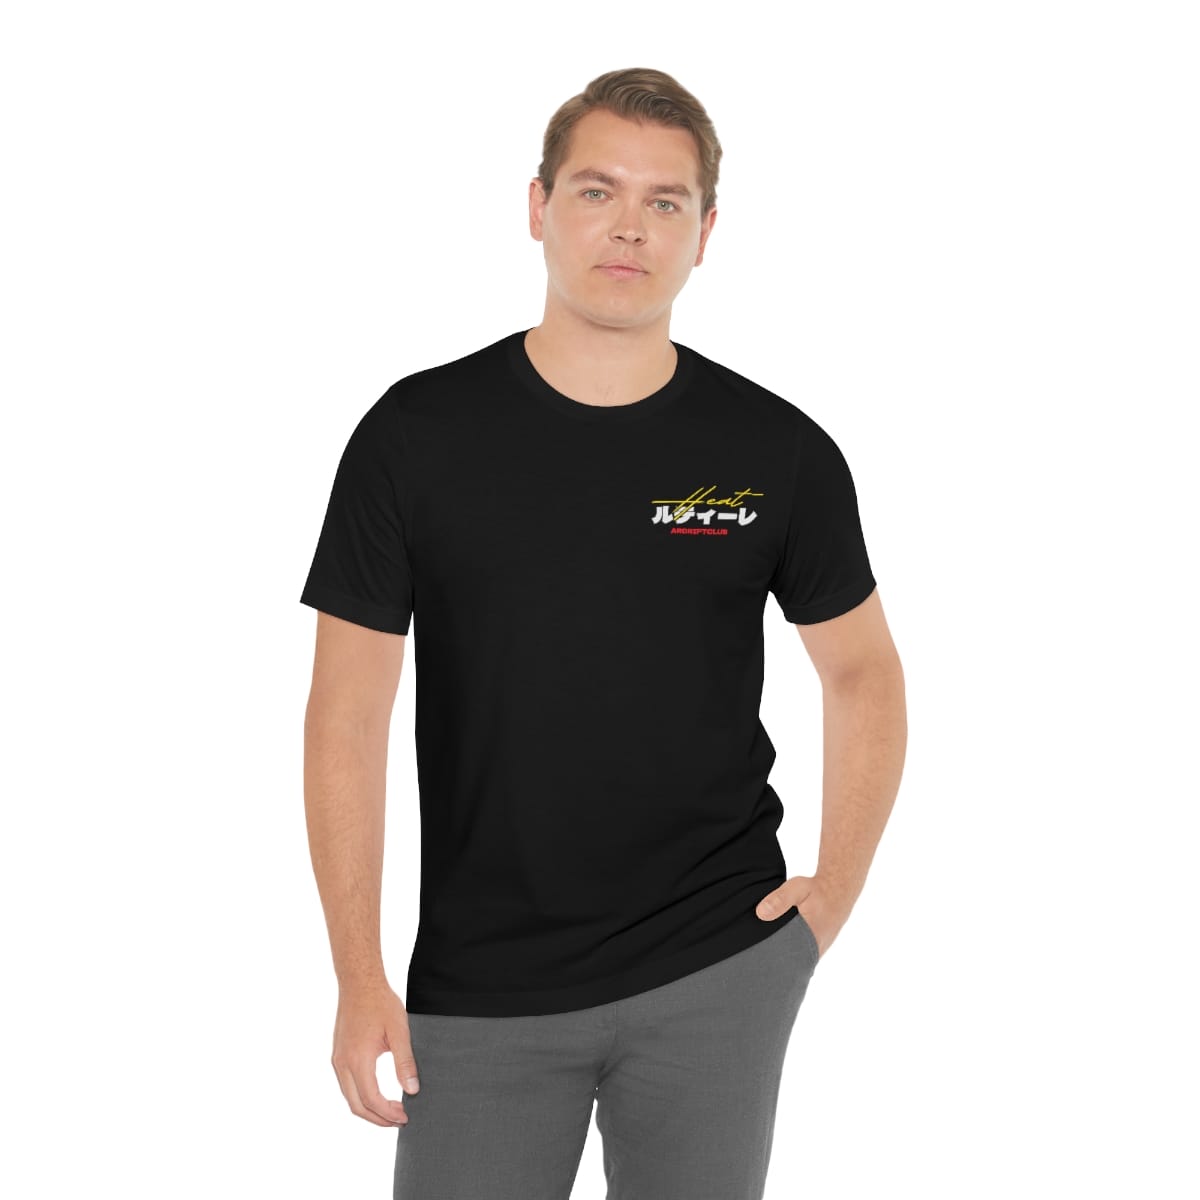 Best AE86 Tire Run Shirt Online - AR Drift Club